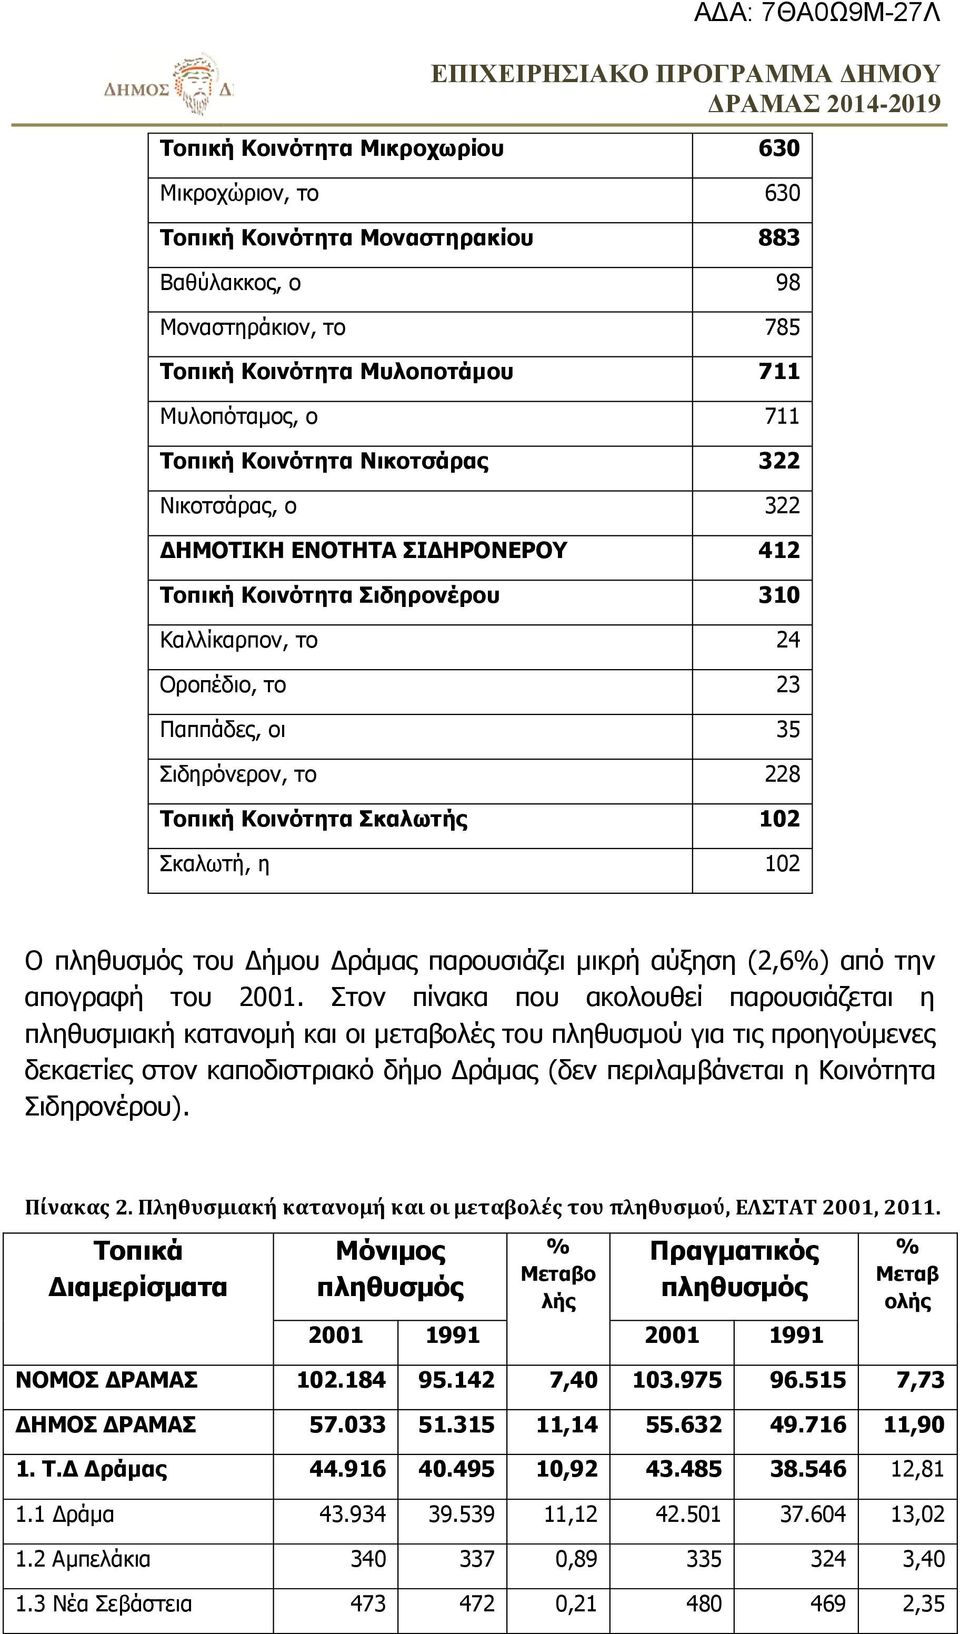 Σκαλωτή, η 102 Ο πληθυσμός του Δήμου Δράμας παρουσιάζει μικρή αύξηση (2,6%) από την απογραφή του 2001.